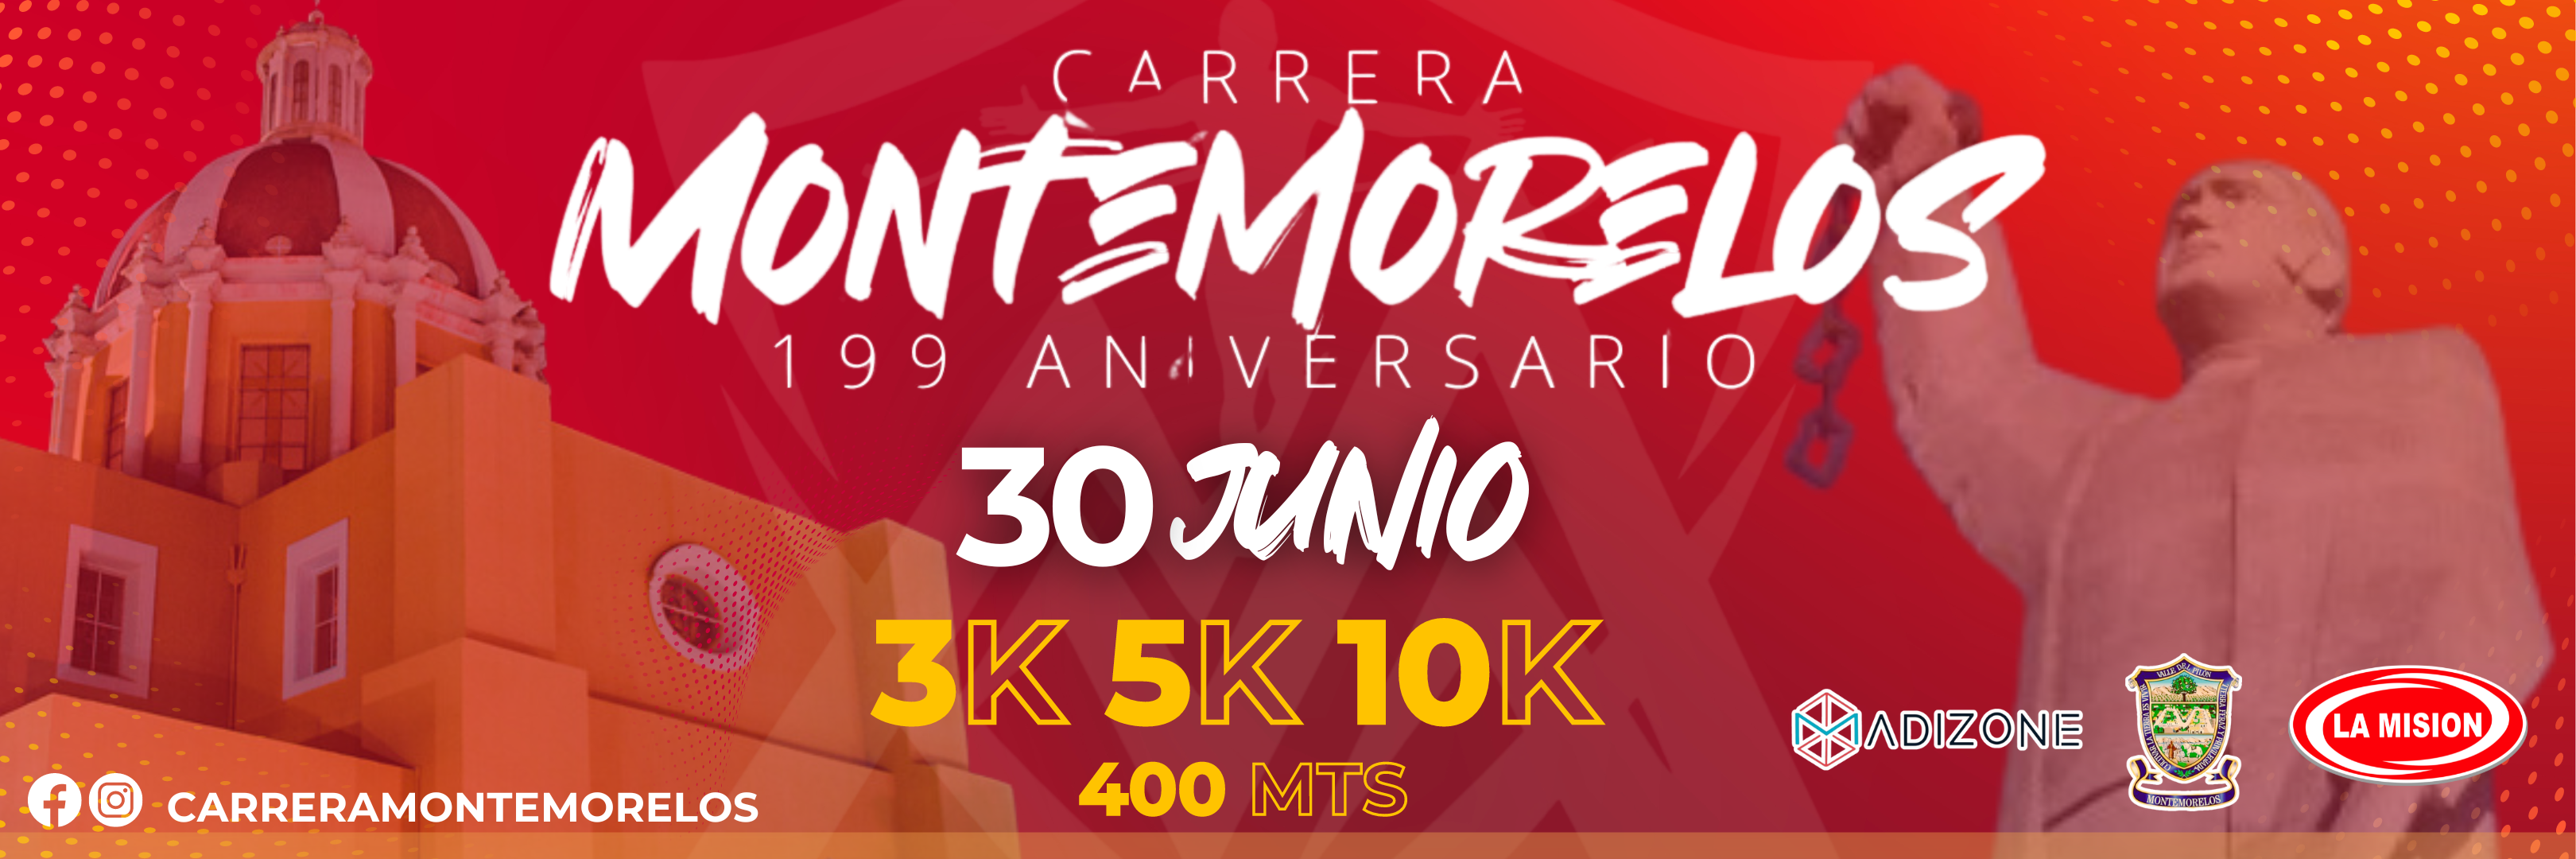 Carrera Montemorelos 199 Aniversario